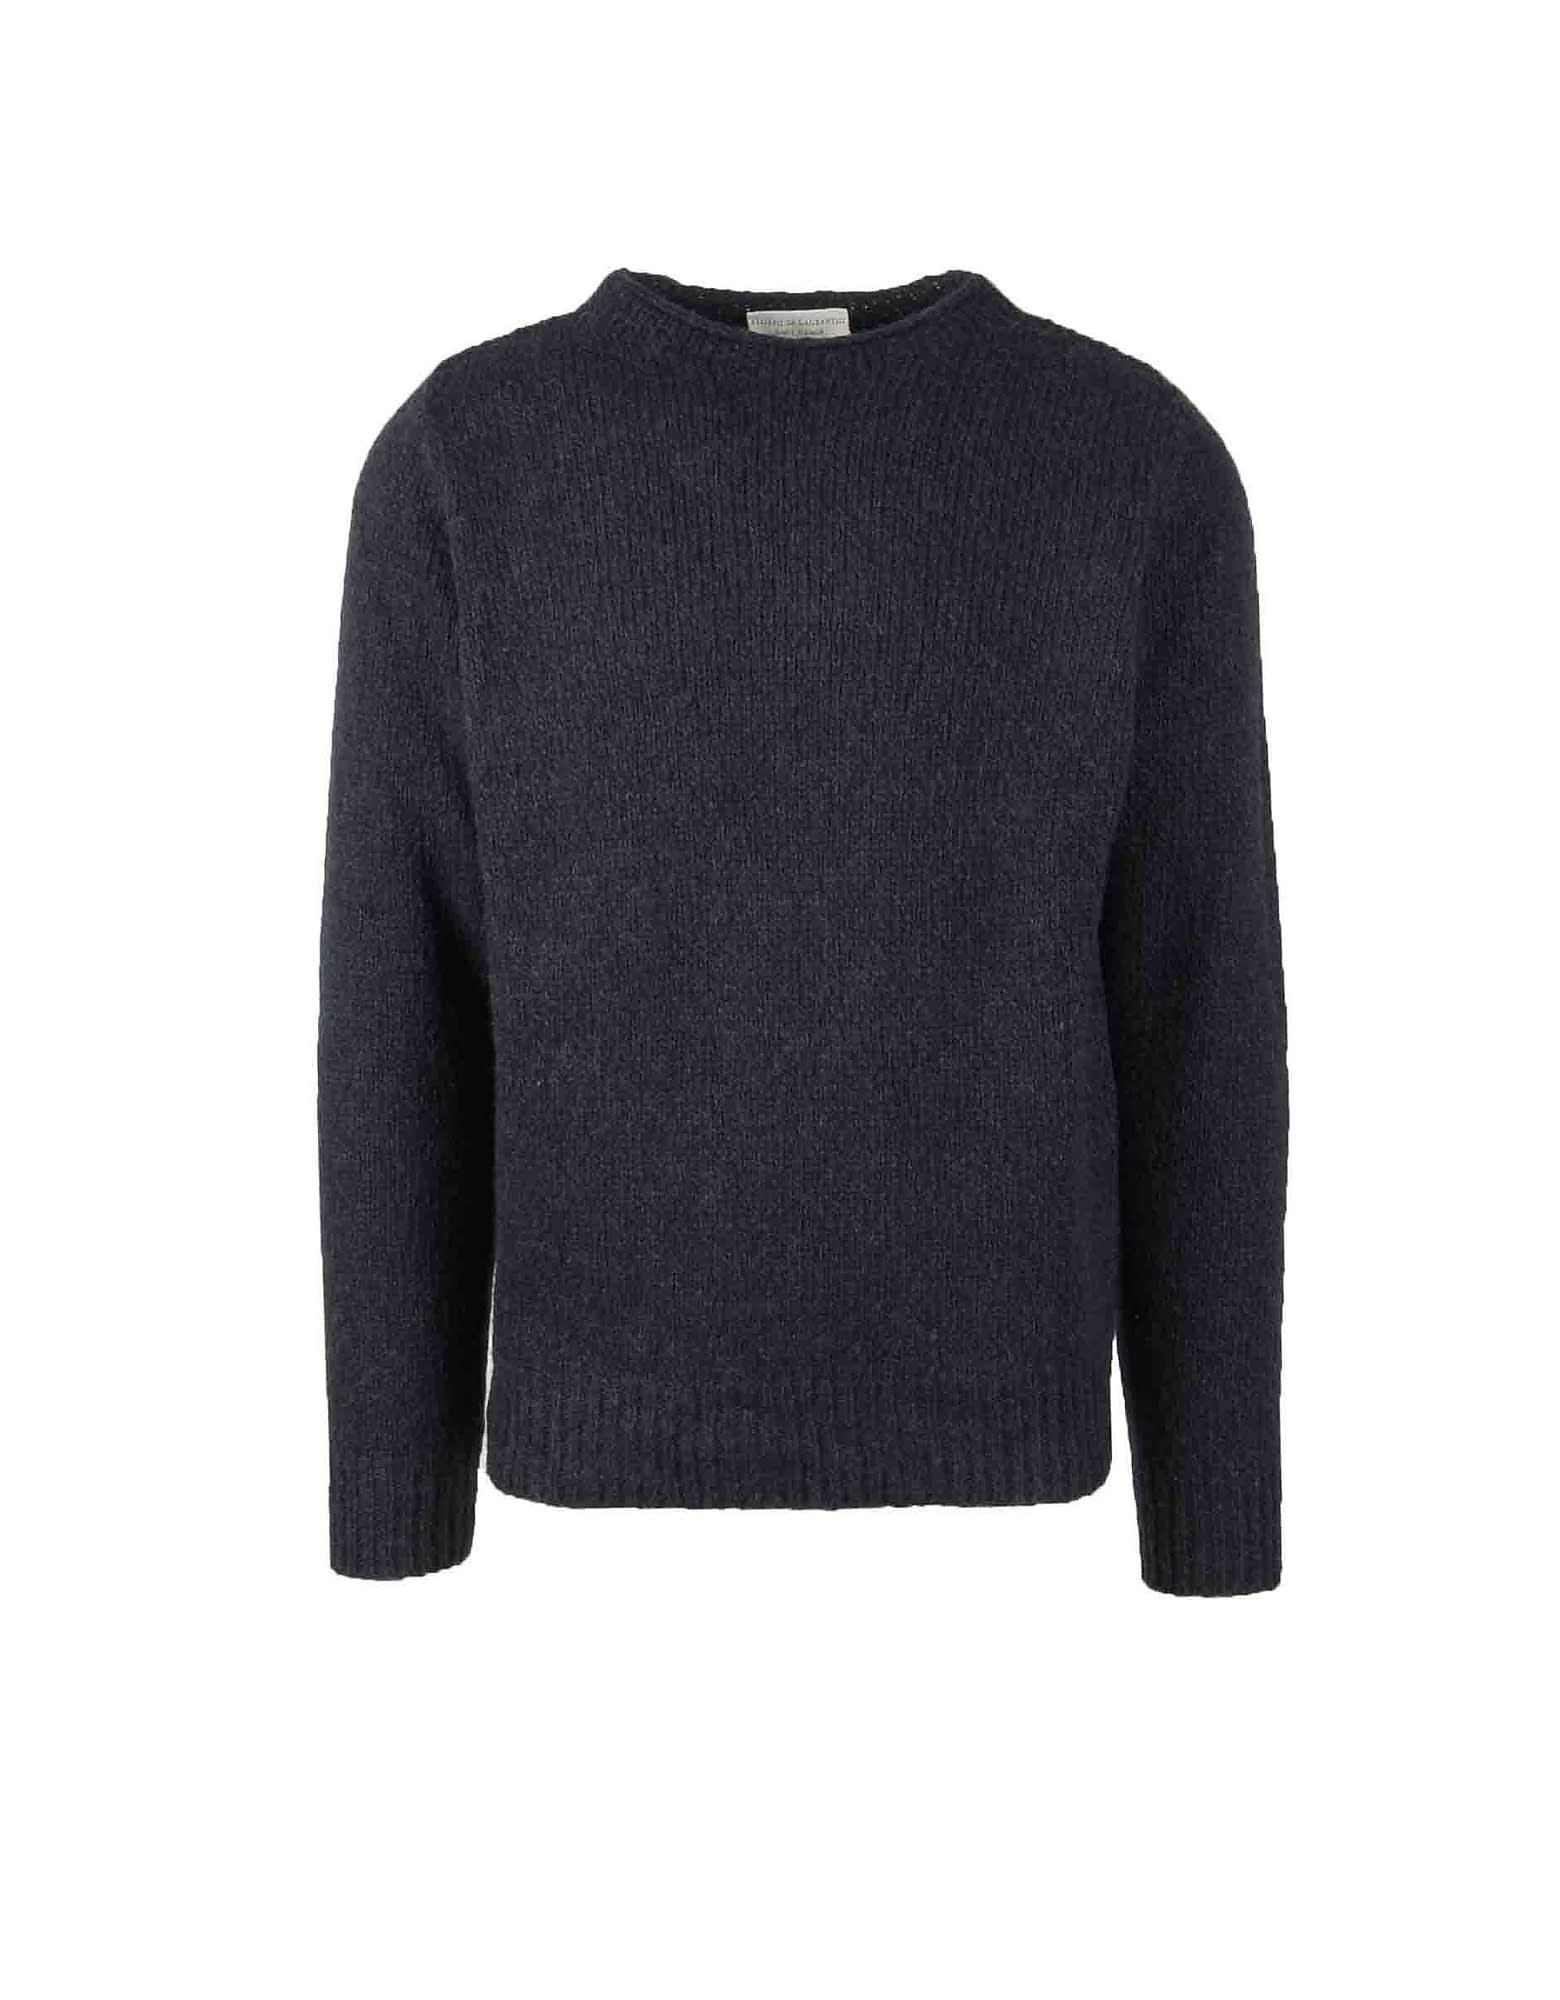 Filippo De Laurentiis Mens Black Sweater